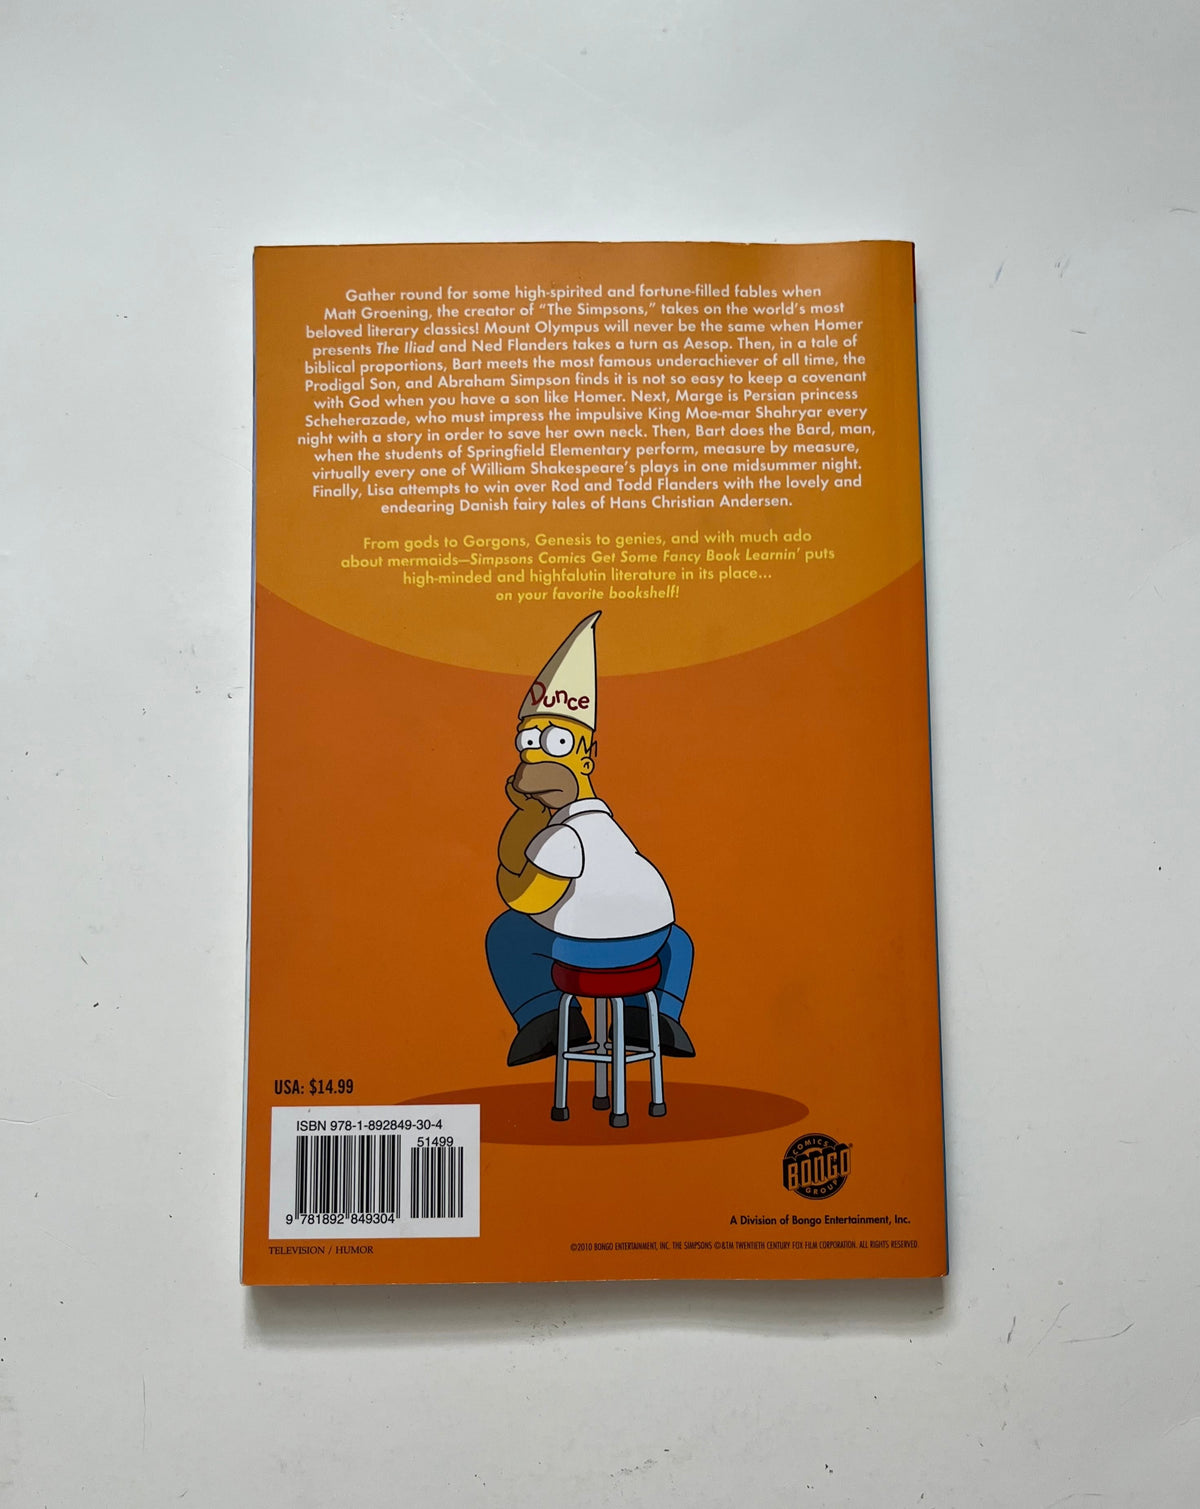 Simpsons Comics: Get Some Fancy Book Learnin&#39; by Matt Groening